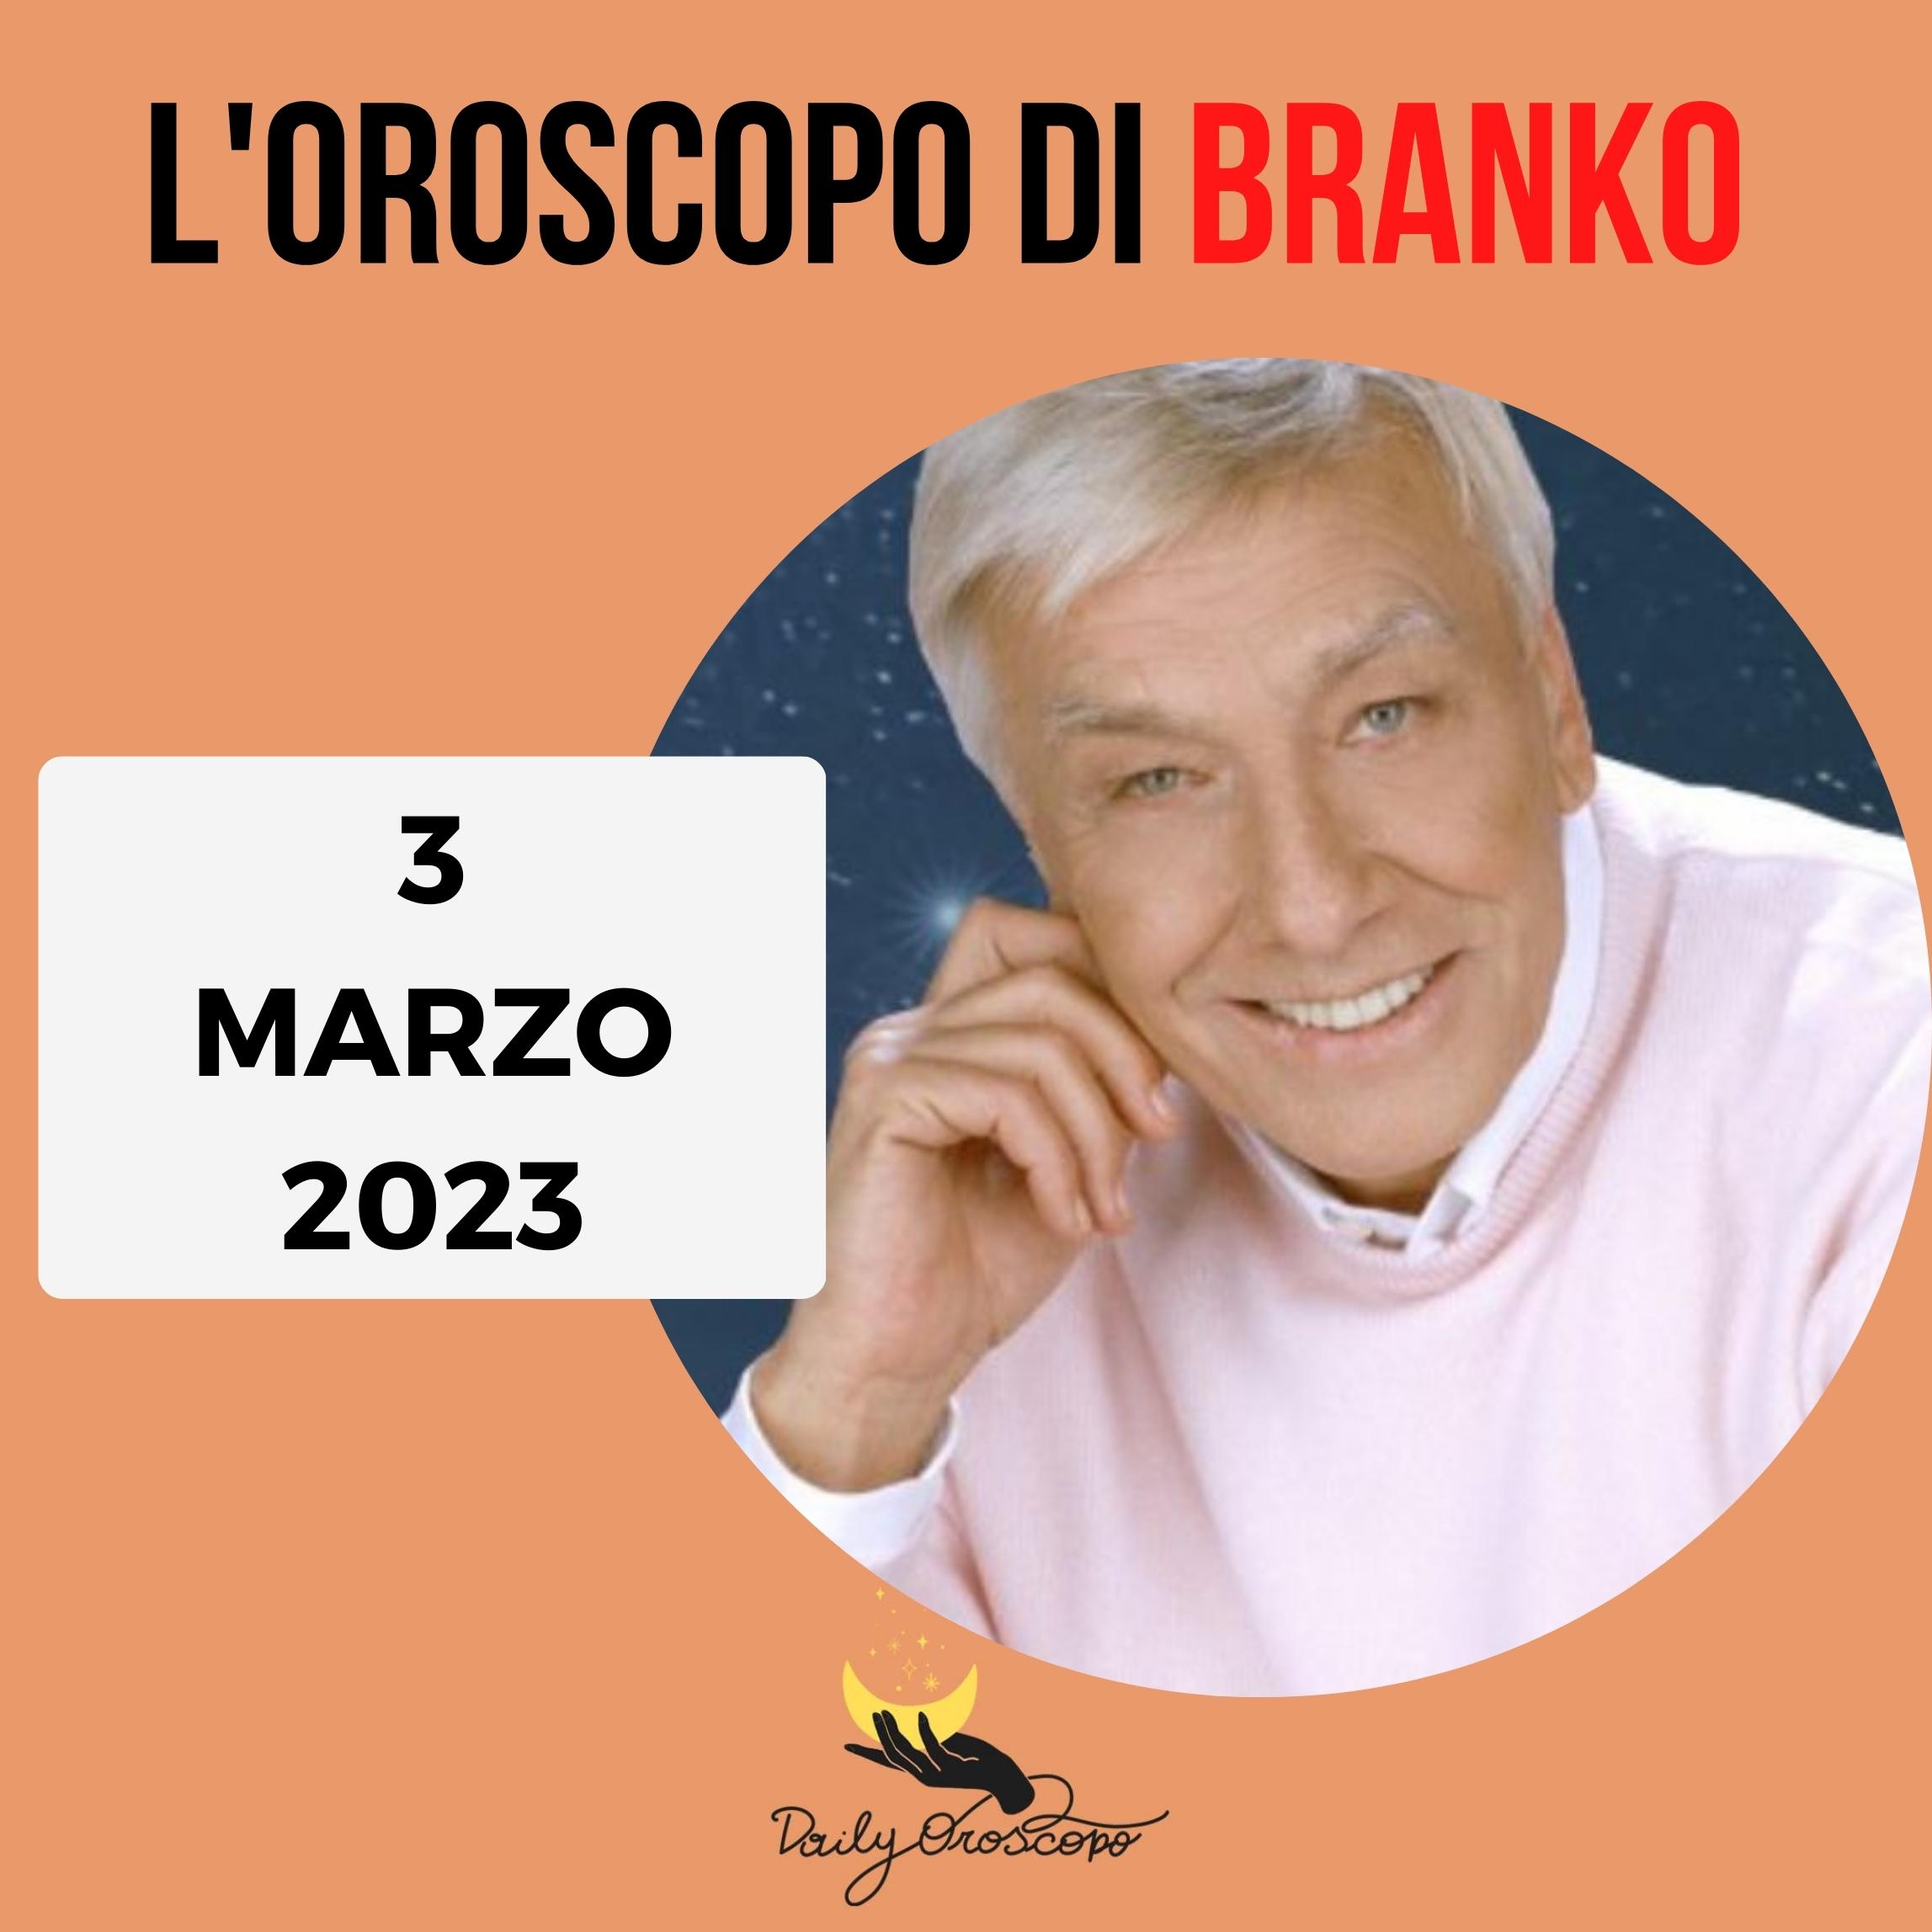 Oroscopo Branko oggi 3 marzo 2023